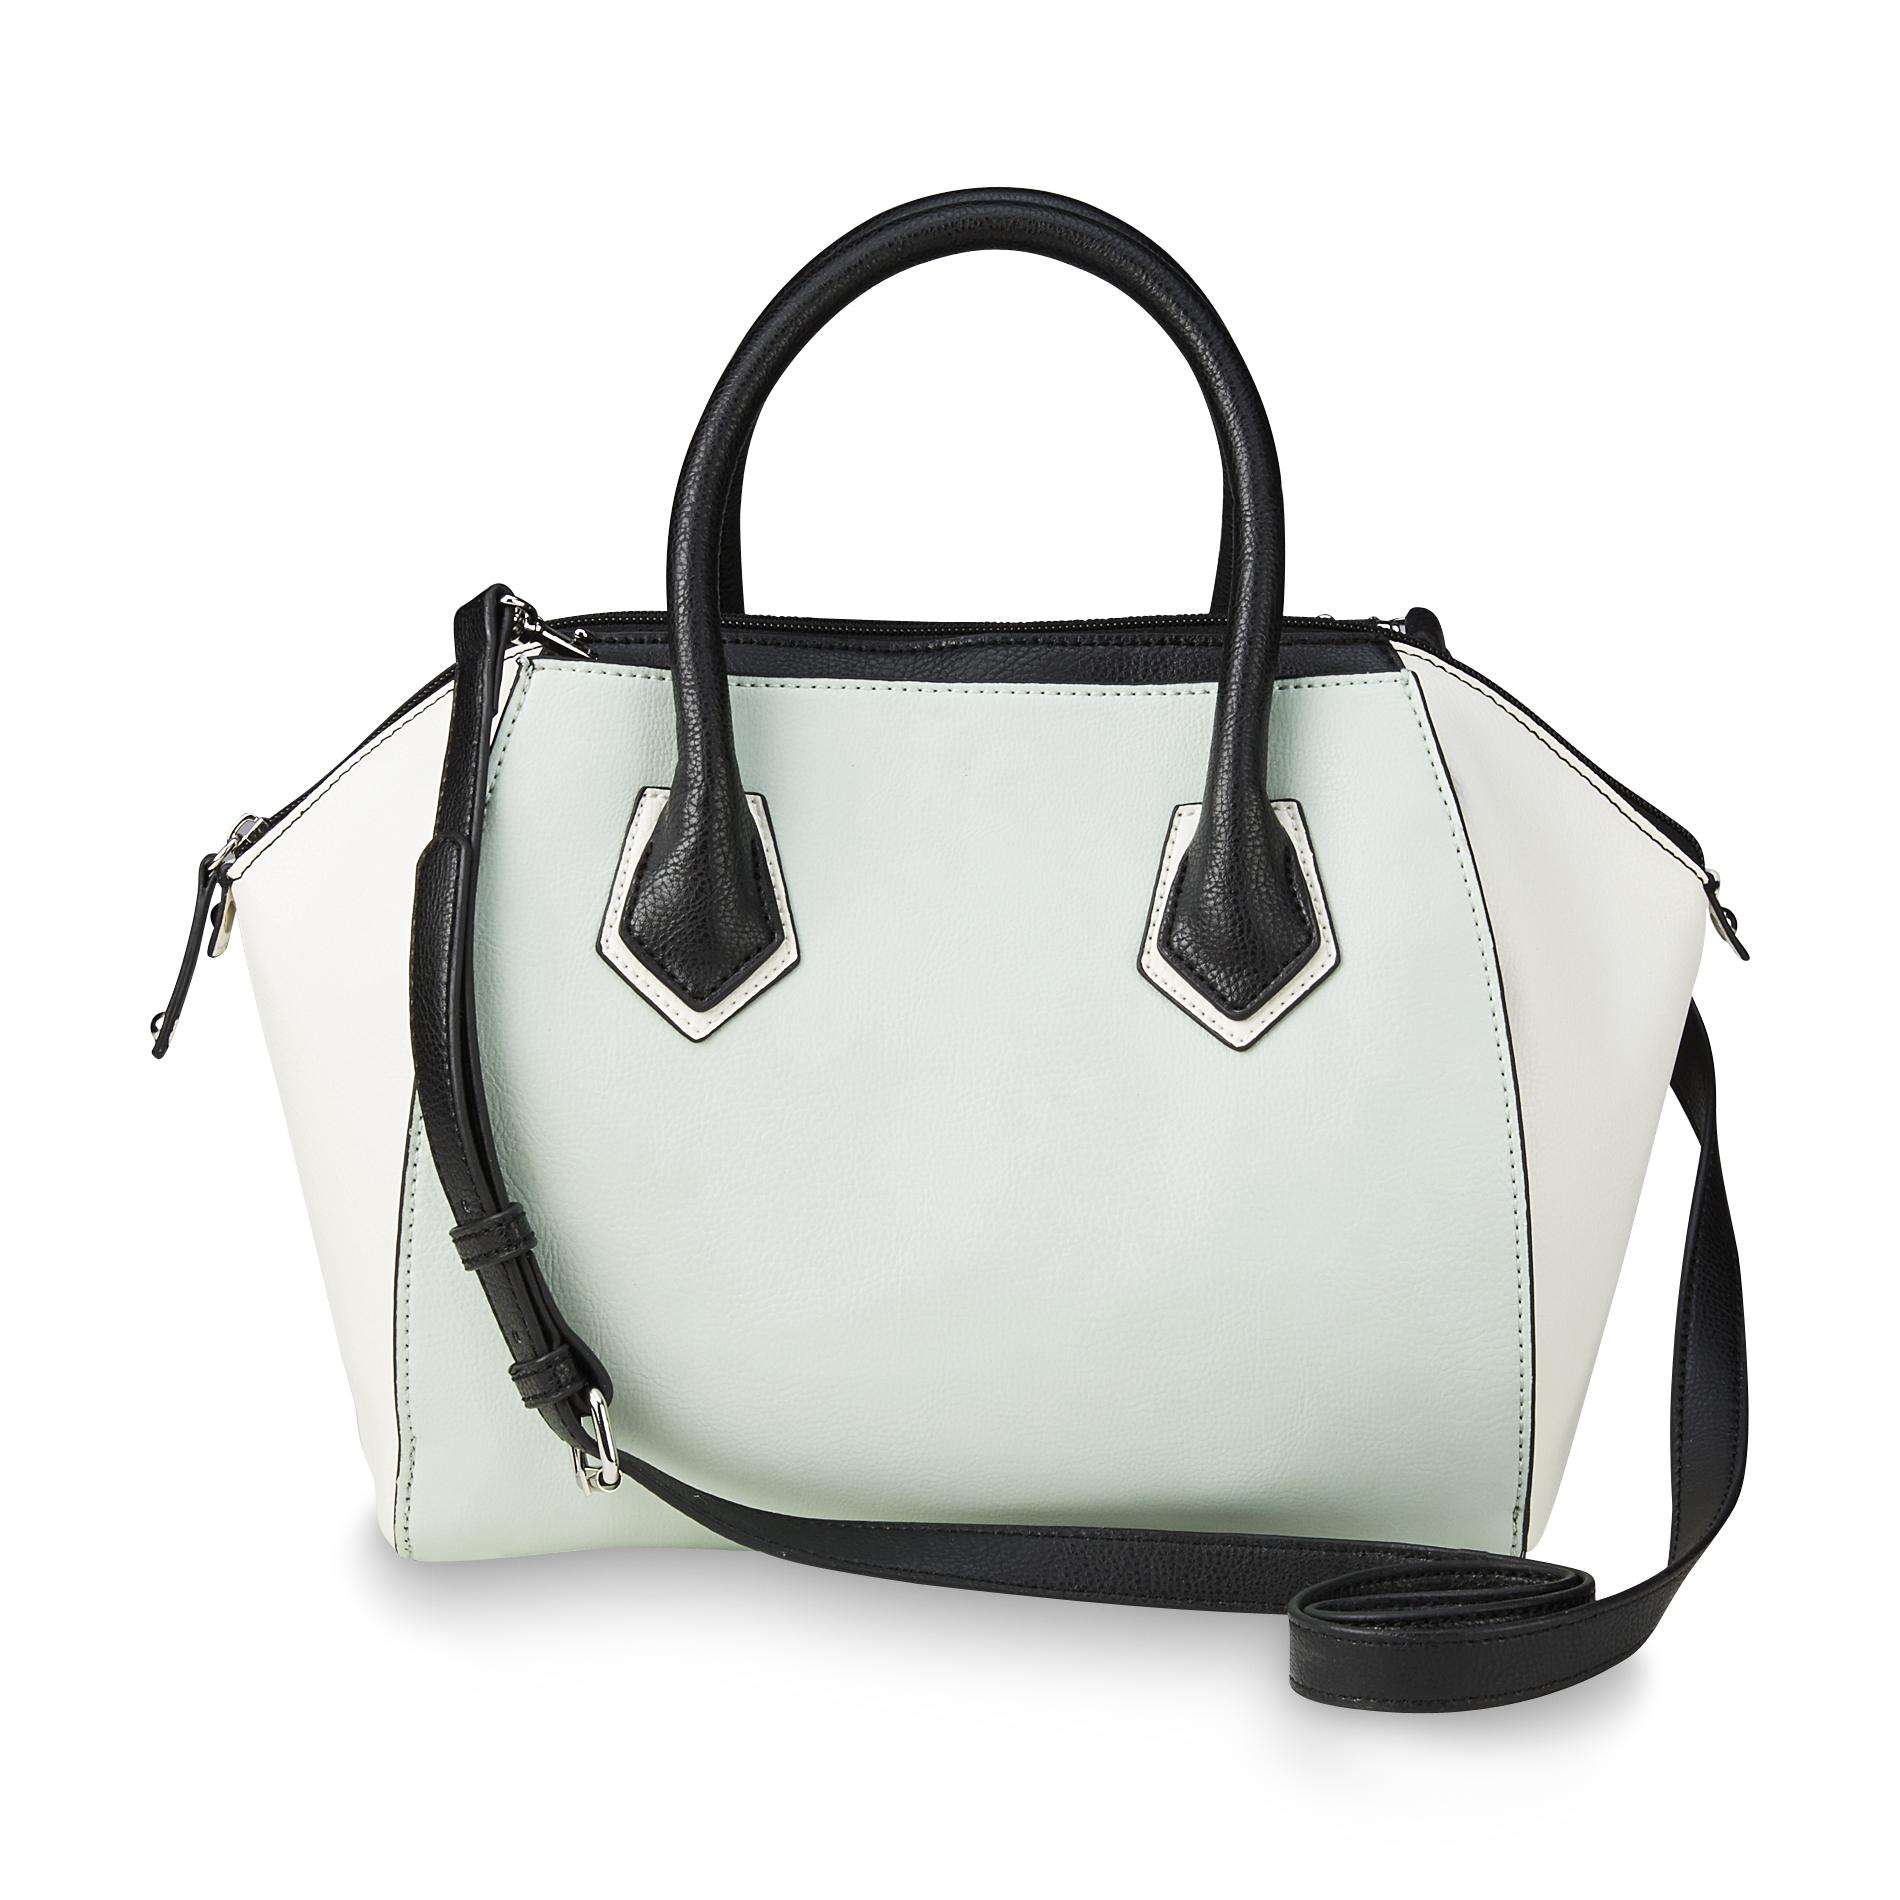 Metaphor Women's Milan Convertible Satchel Handbag